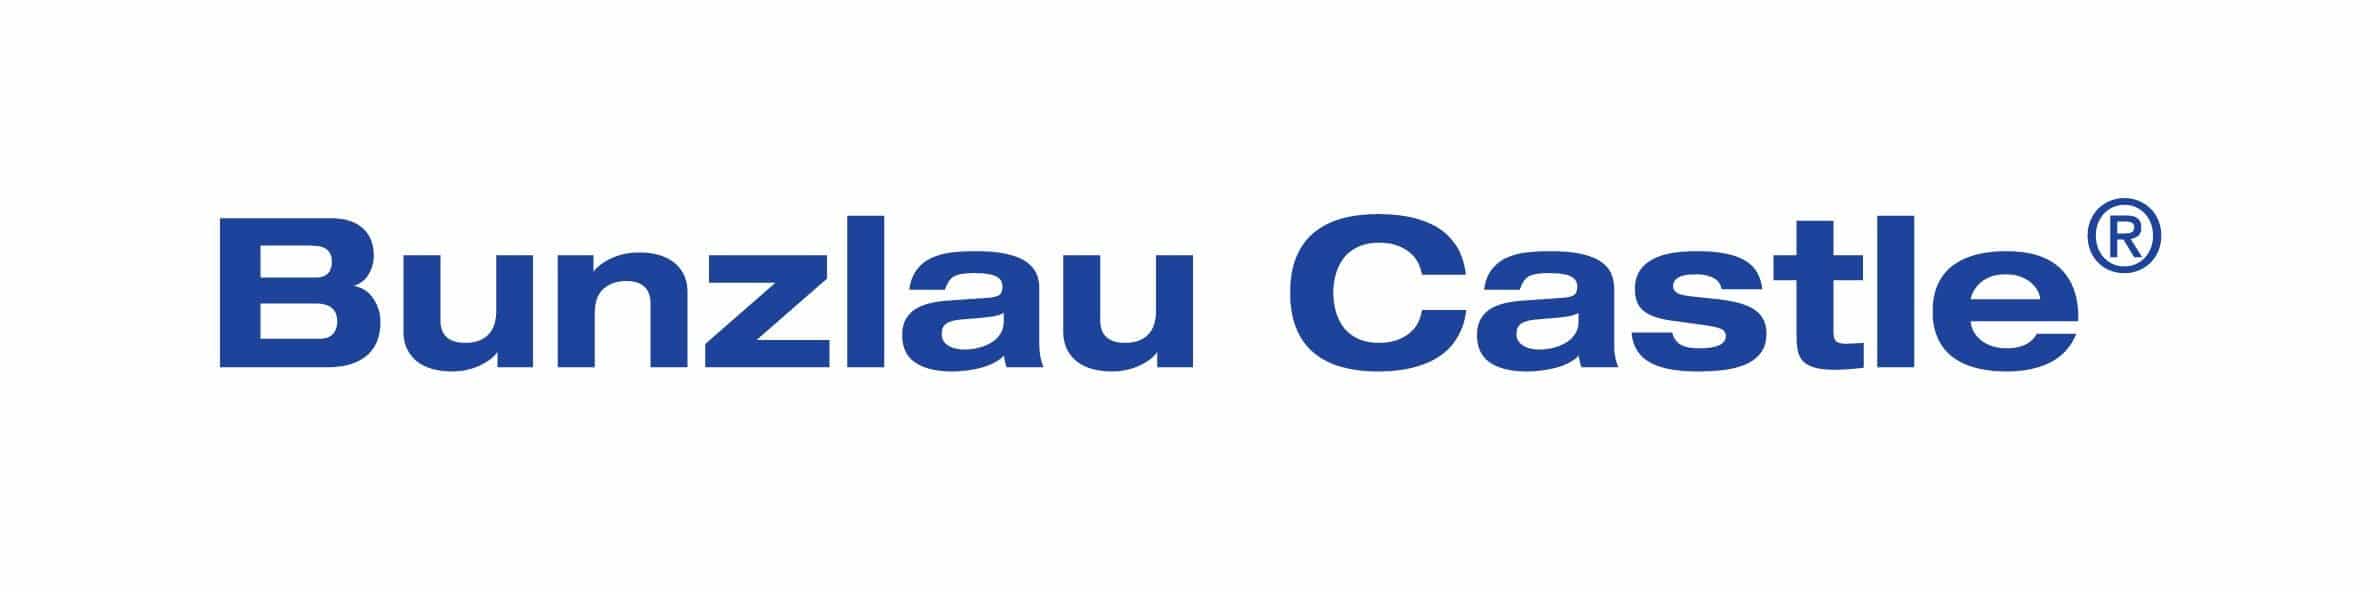 bunzlau_castle_logo